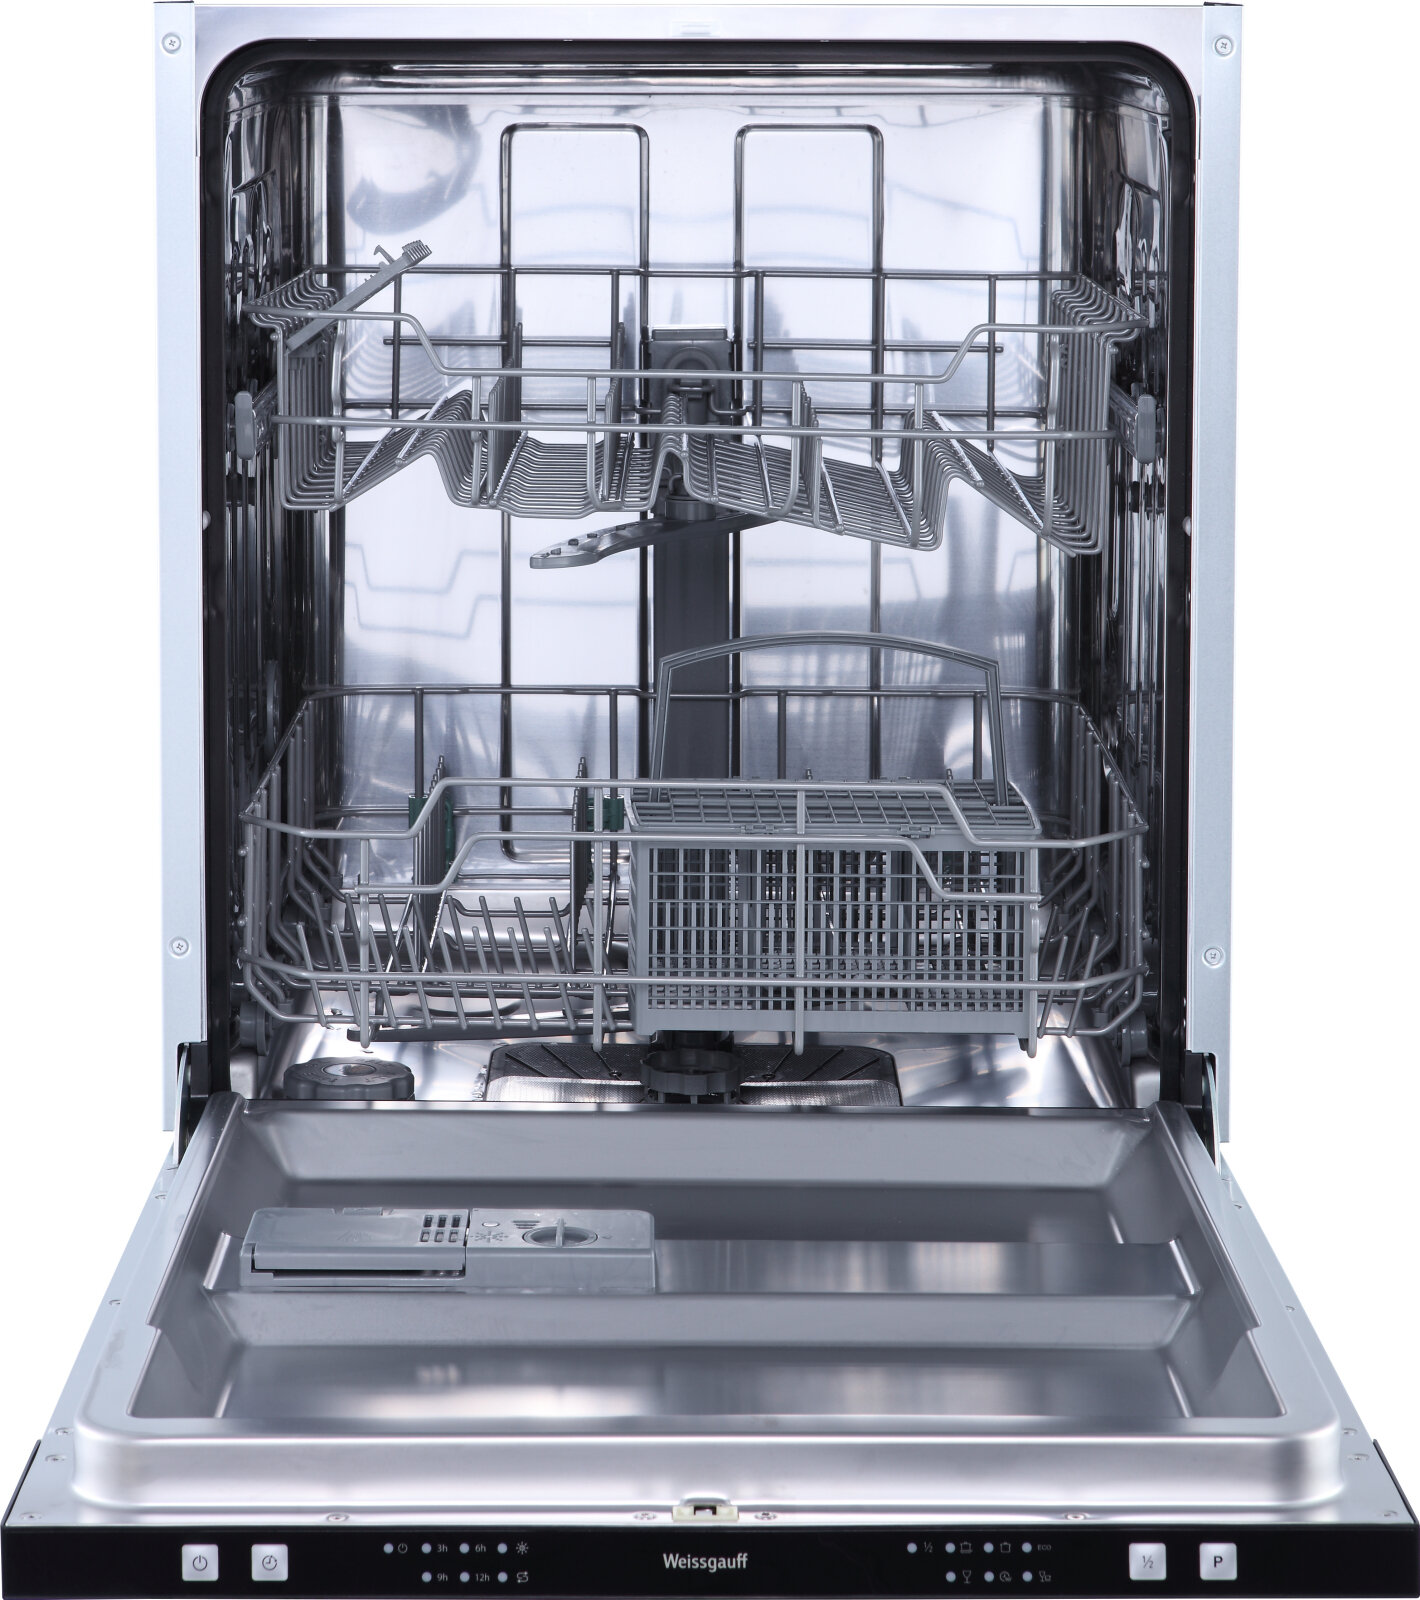 Встраиваемая посудомоечная машина Weissgauff BDW 6026, 3 года гарантии, 12 комплектов посуды, половинная загрузка, 6 программ, быстрый режим, универсальная программа, экономичная программа, таймер, дозагрузка посуды, электронное управление